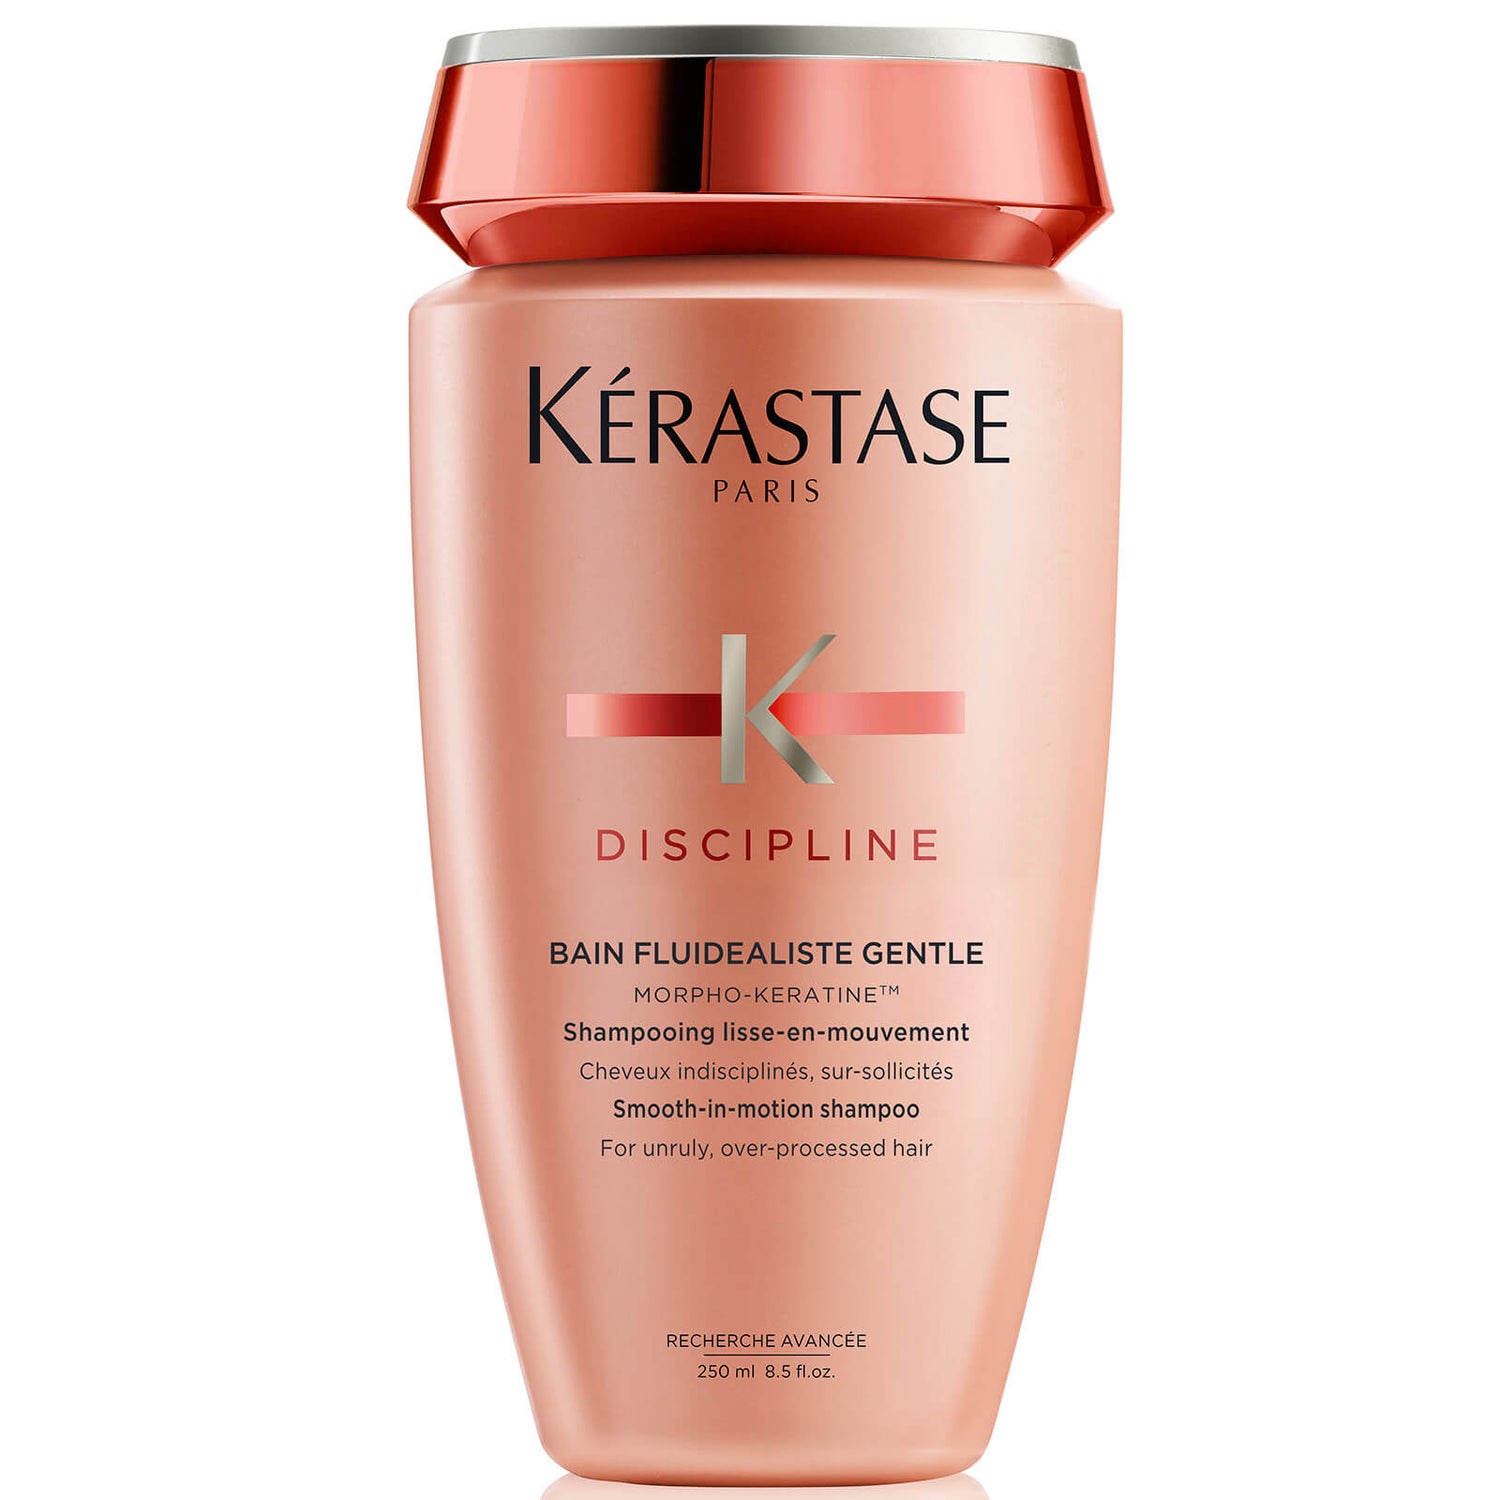 Kérastase Discipline Bain Fluidealiste Shampoo for Cleansing Impurities and Protection Against Hair Frizz 250ml